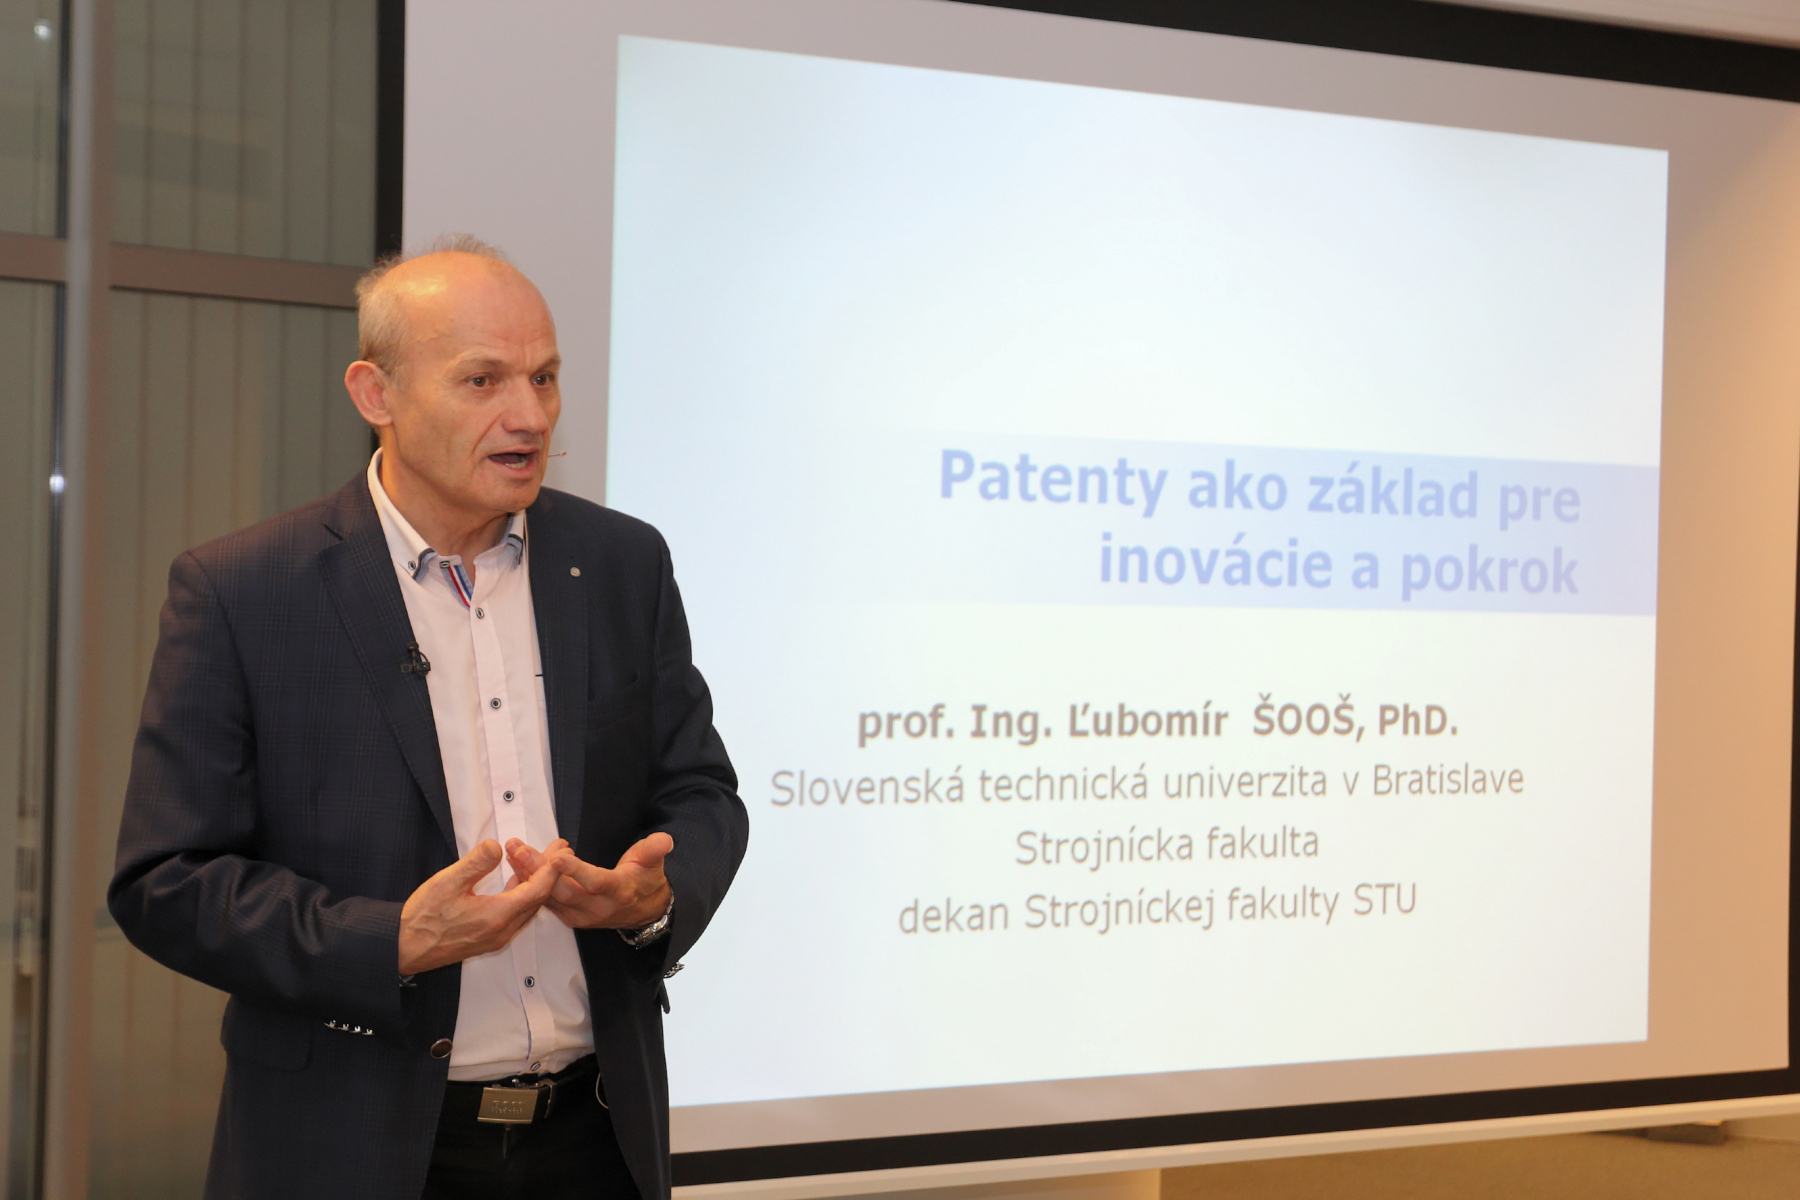 Patenty ako základ pre inovácie a pokrok – prof. Ing. Ľubomír Šooš, PhD.